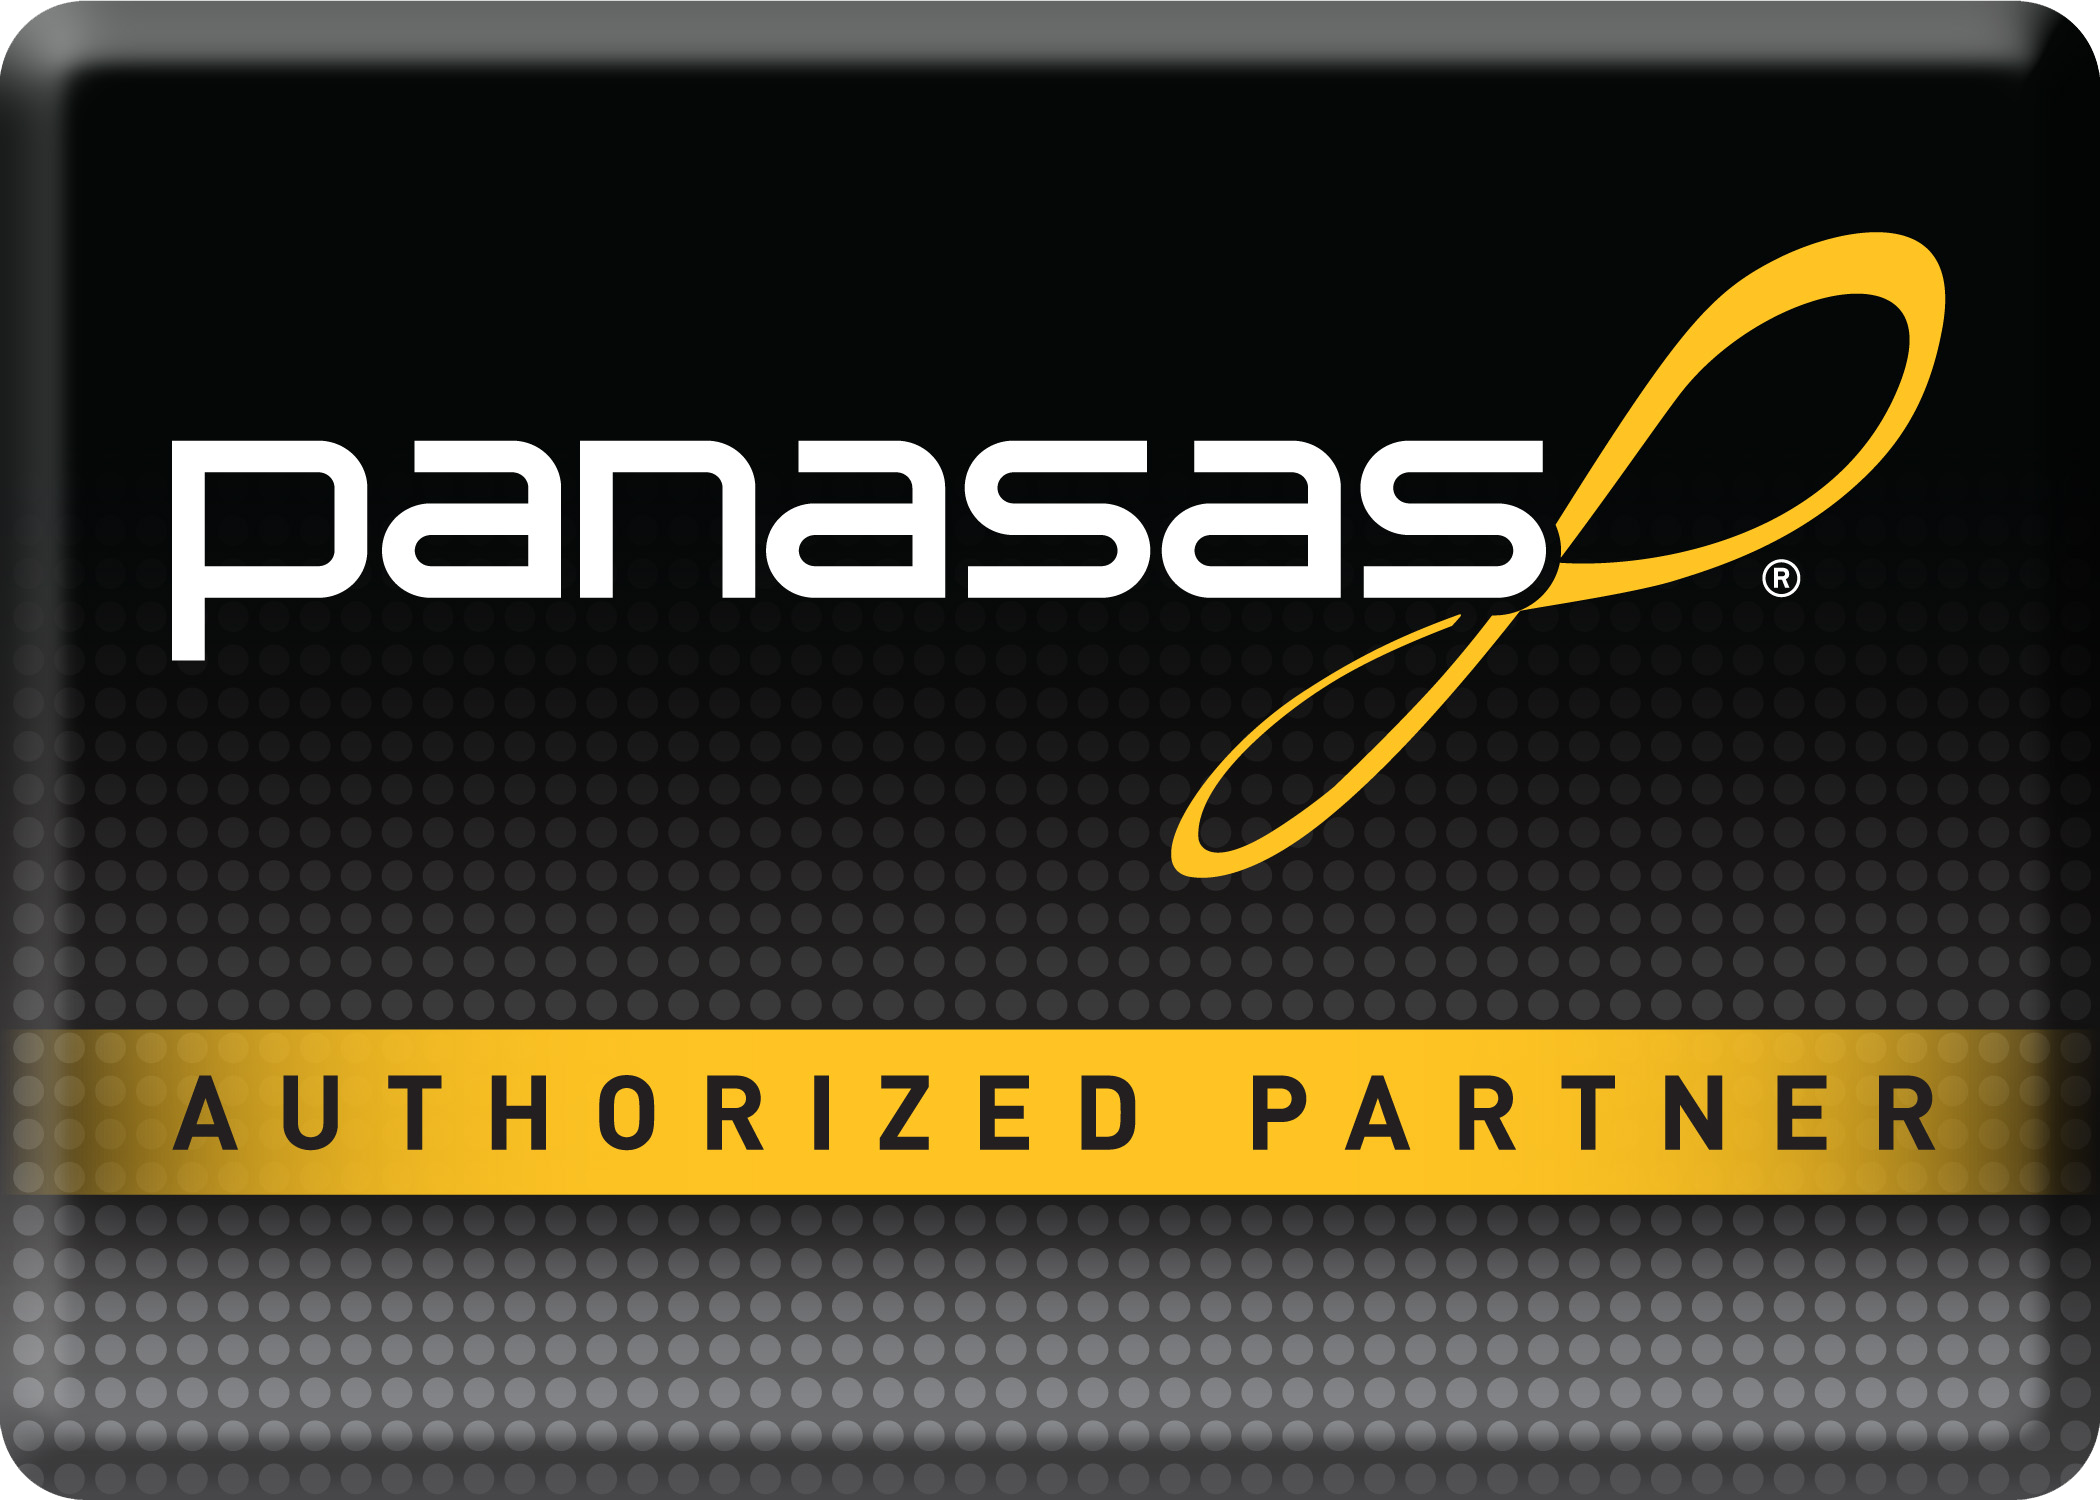 Panasas authorized partner